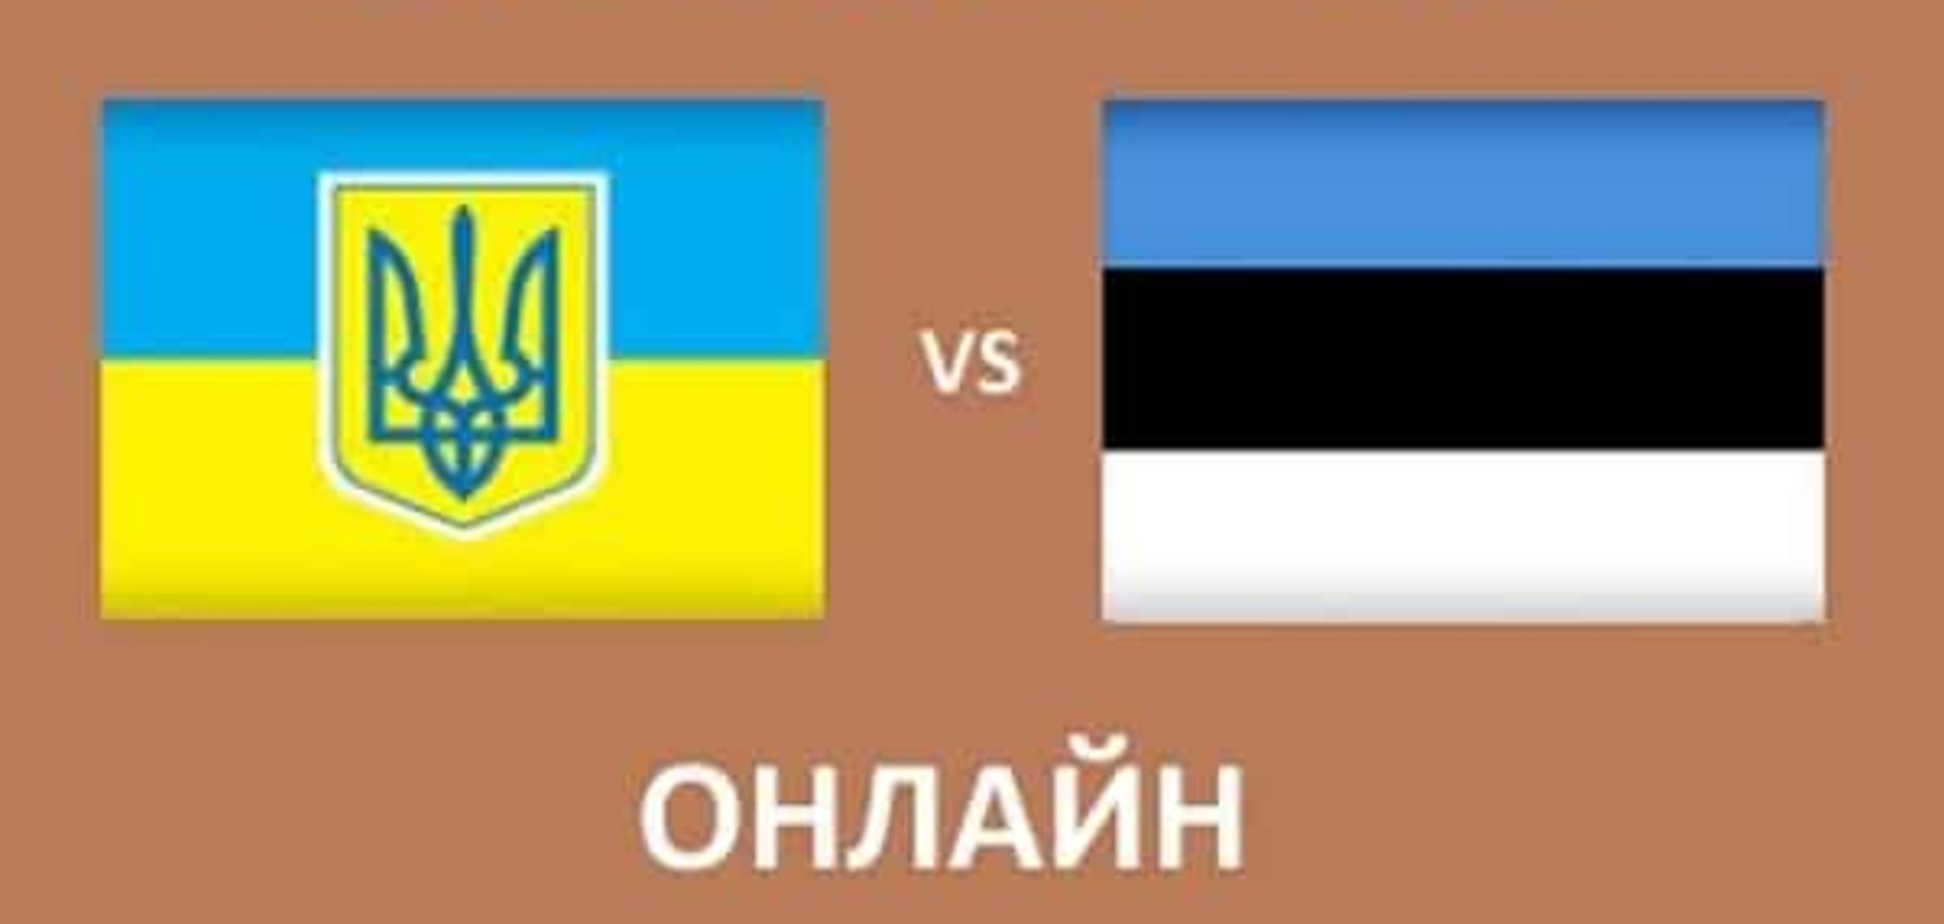 Украина - Эстония - 71:78: неожиданное поражение на Евробаскете-2015